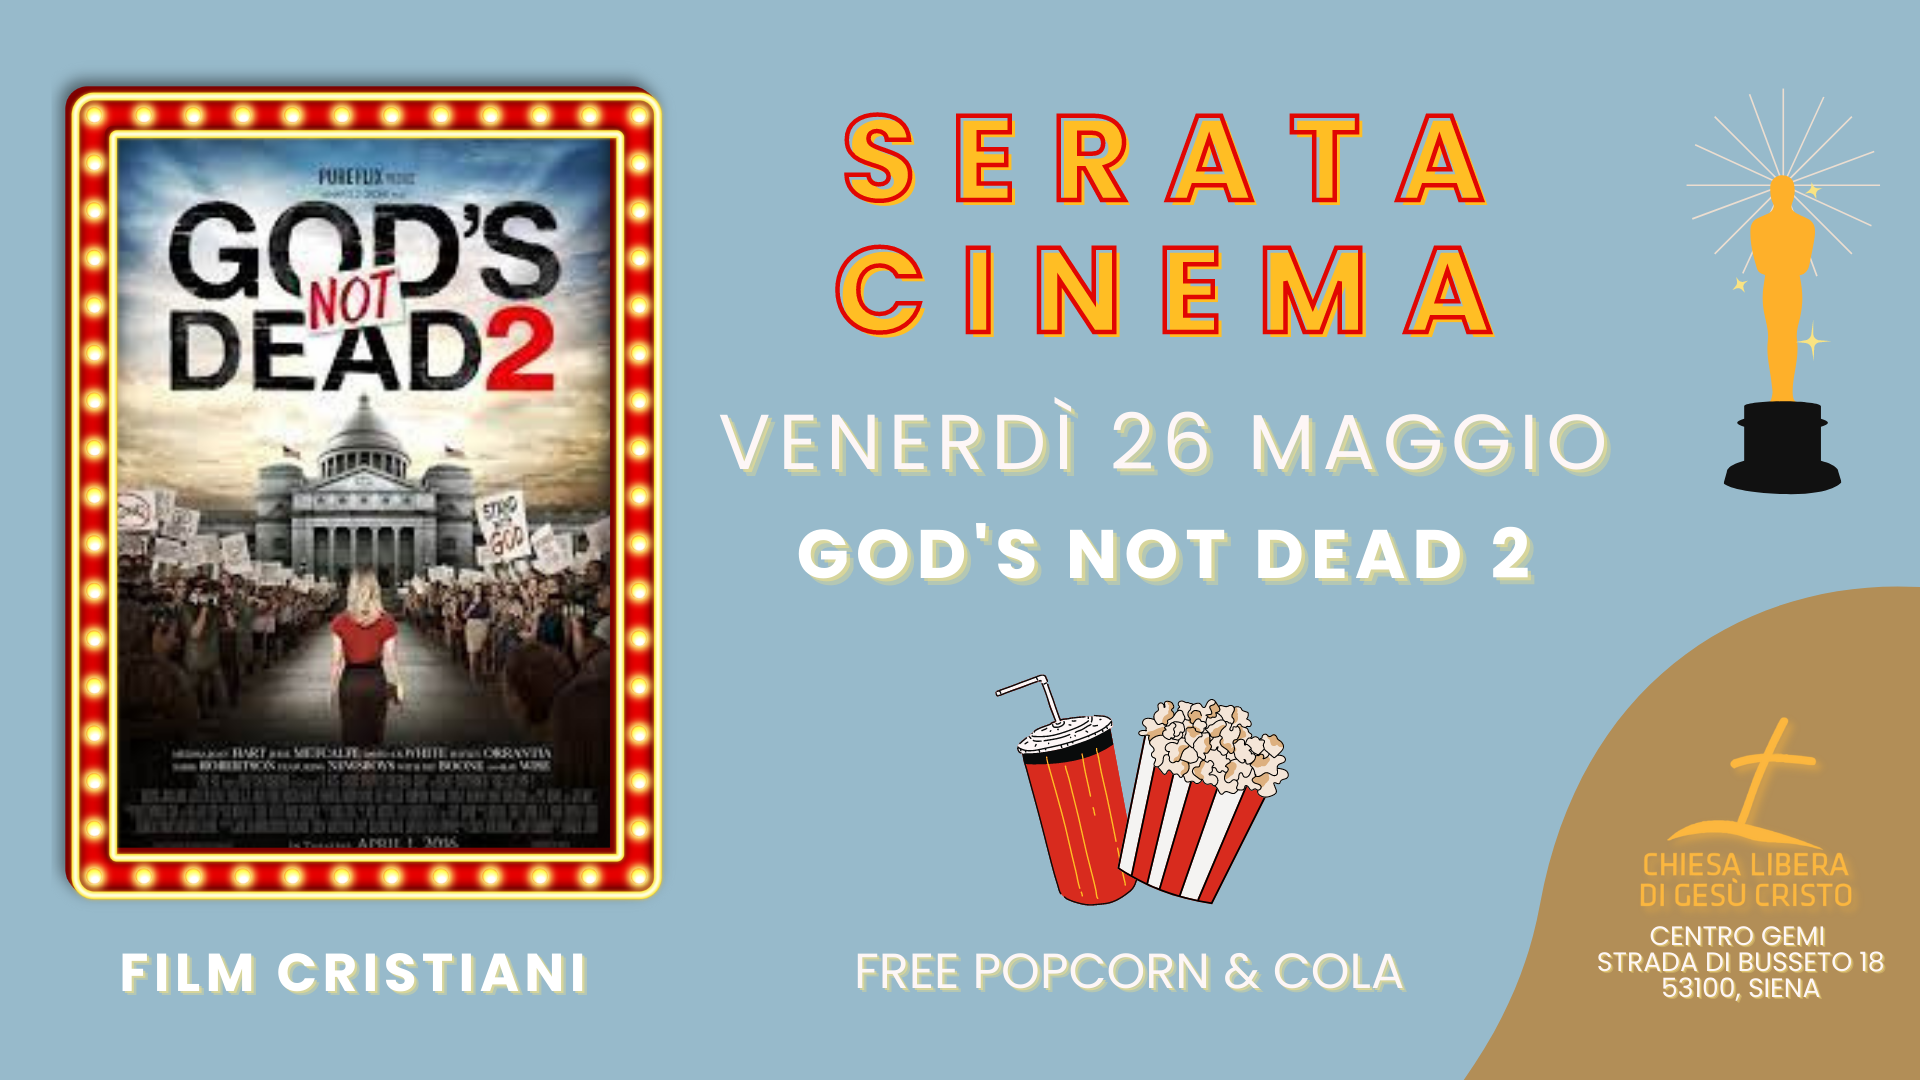 Gods not dead 2 Invito Serata Cinema